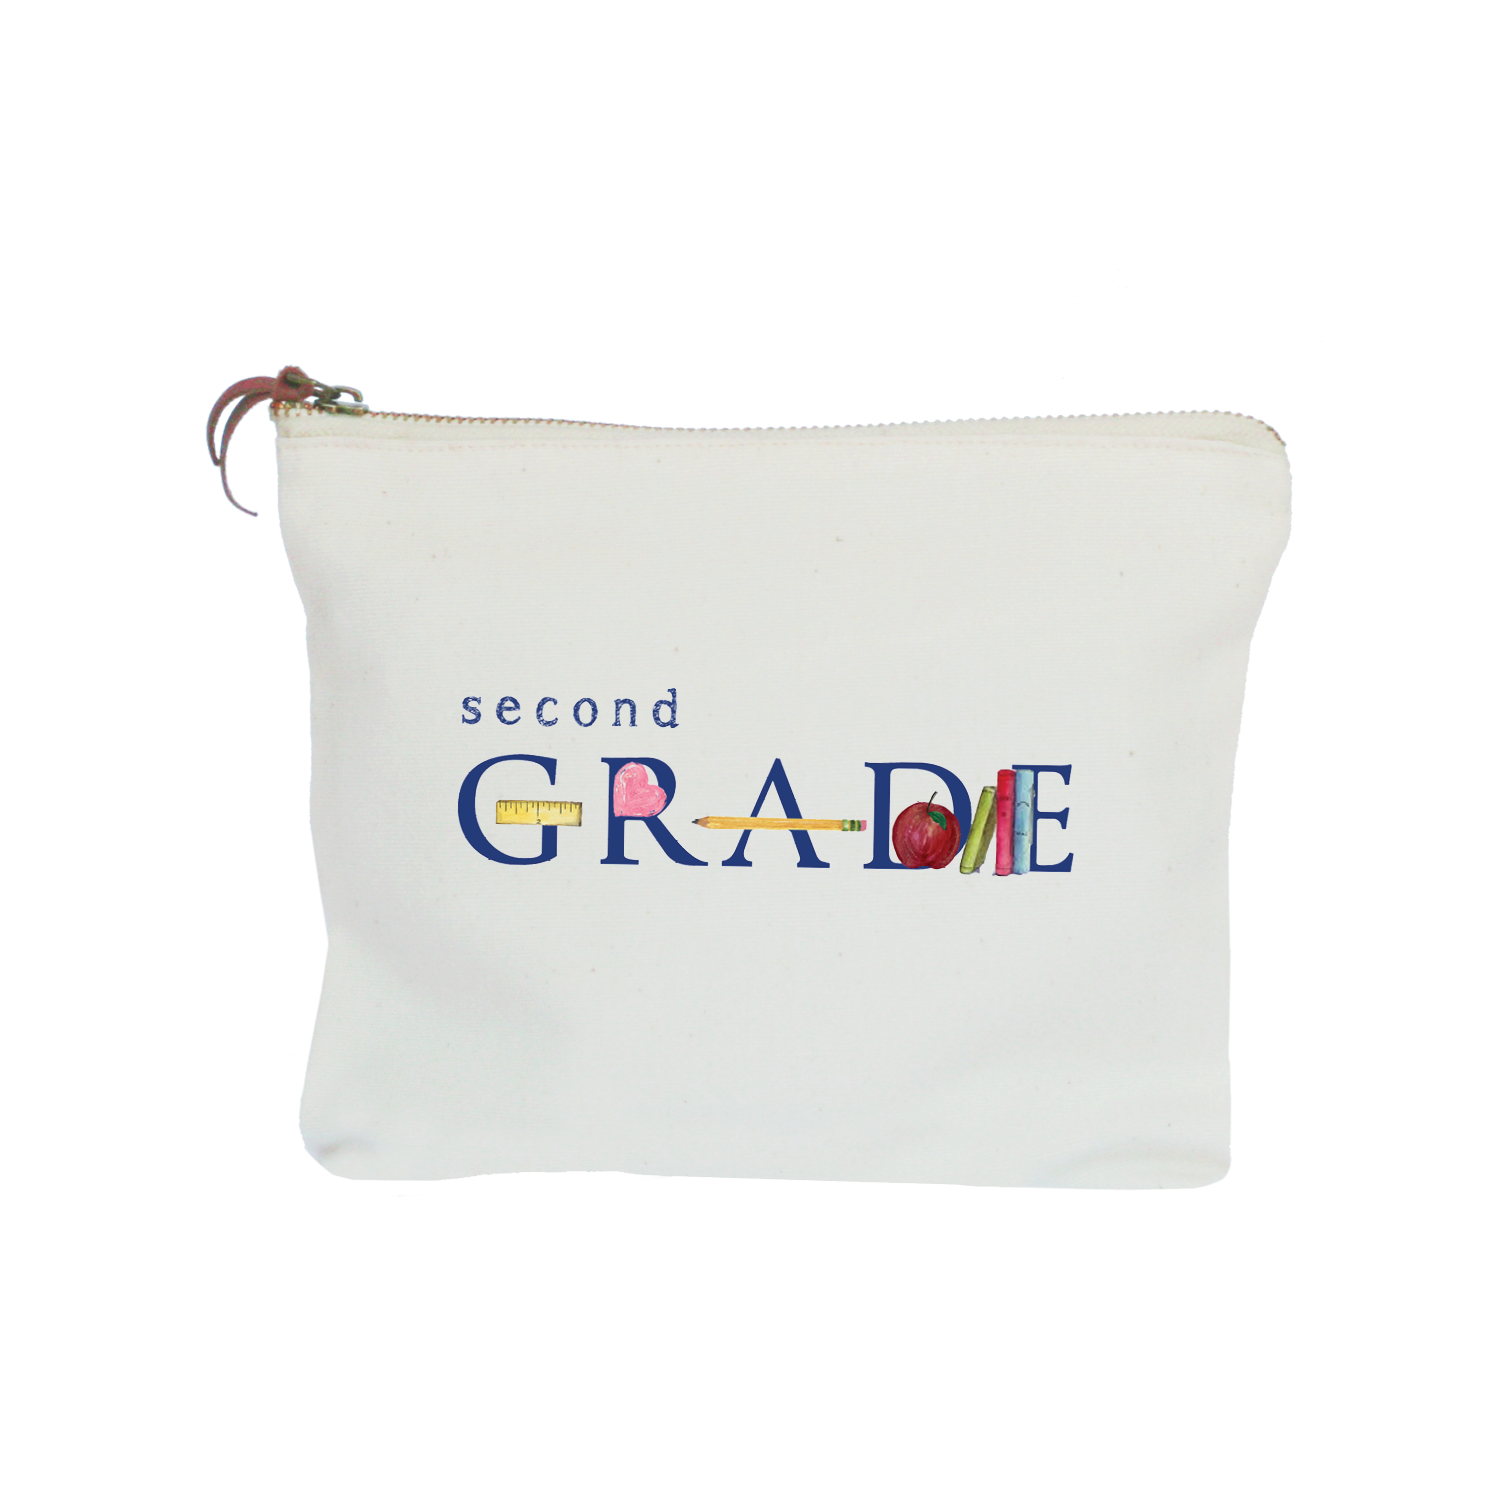 second grade zipper pouch